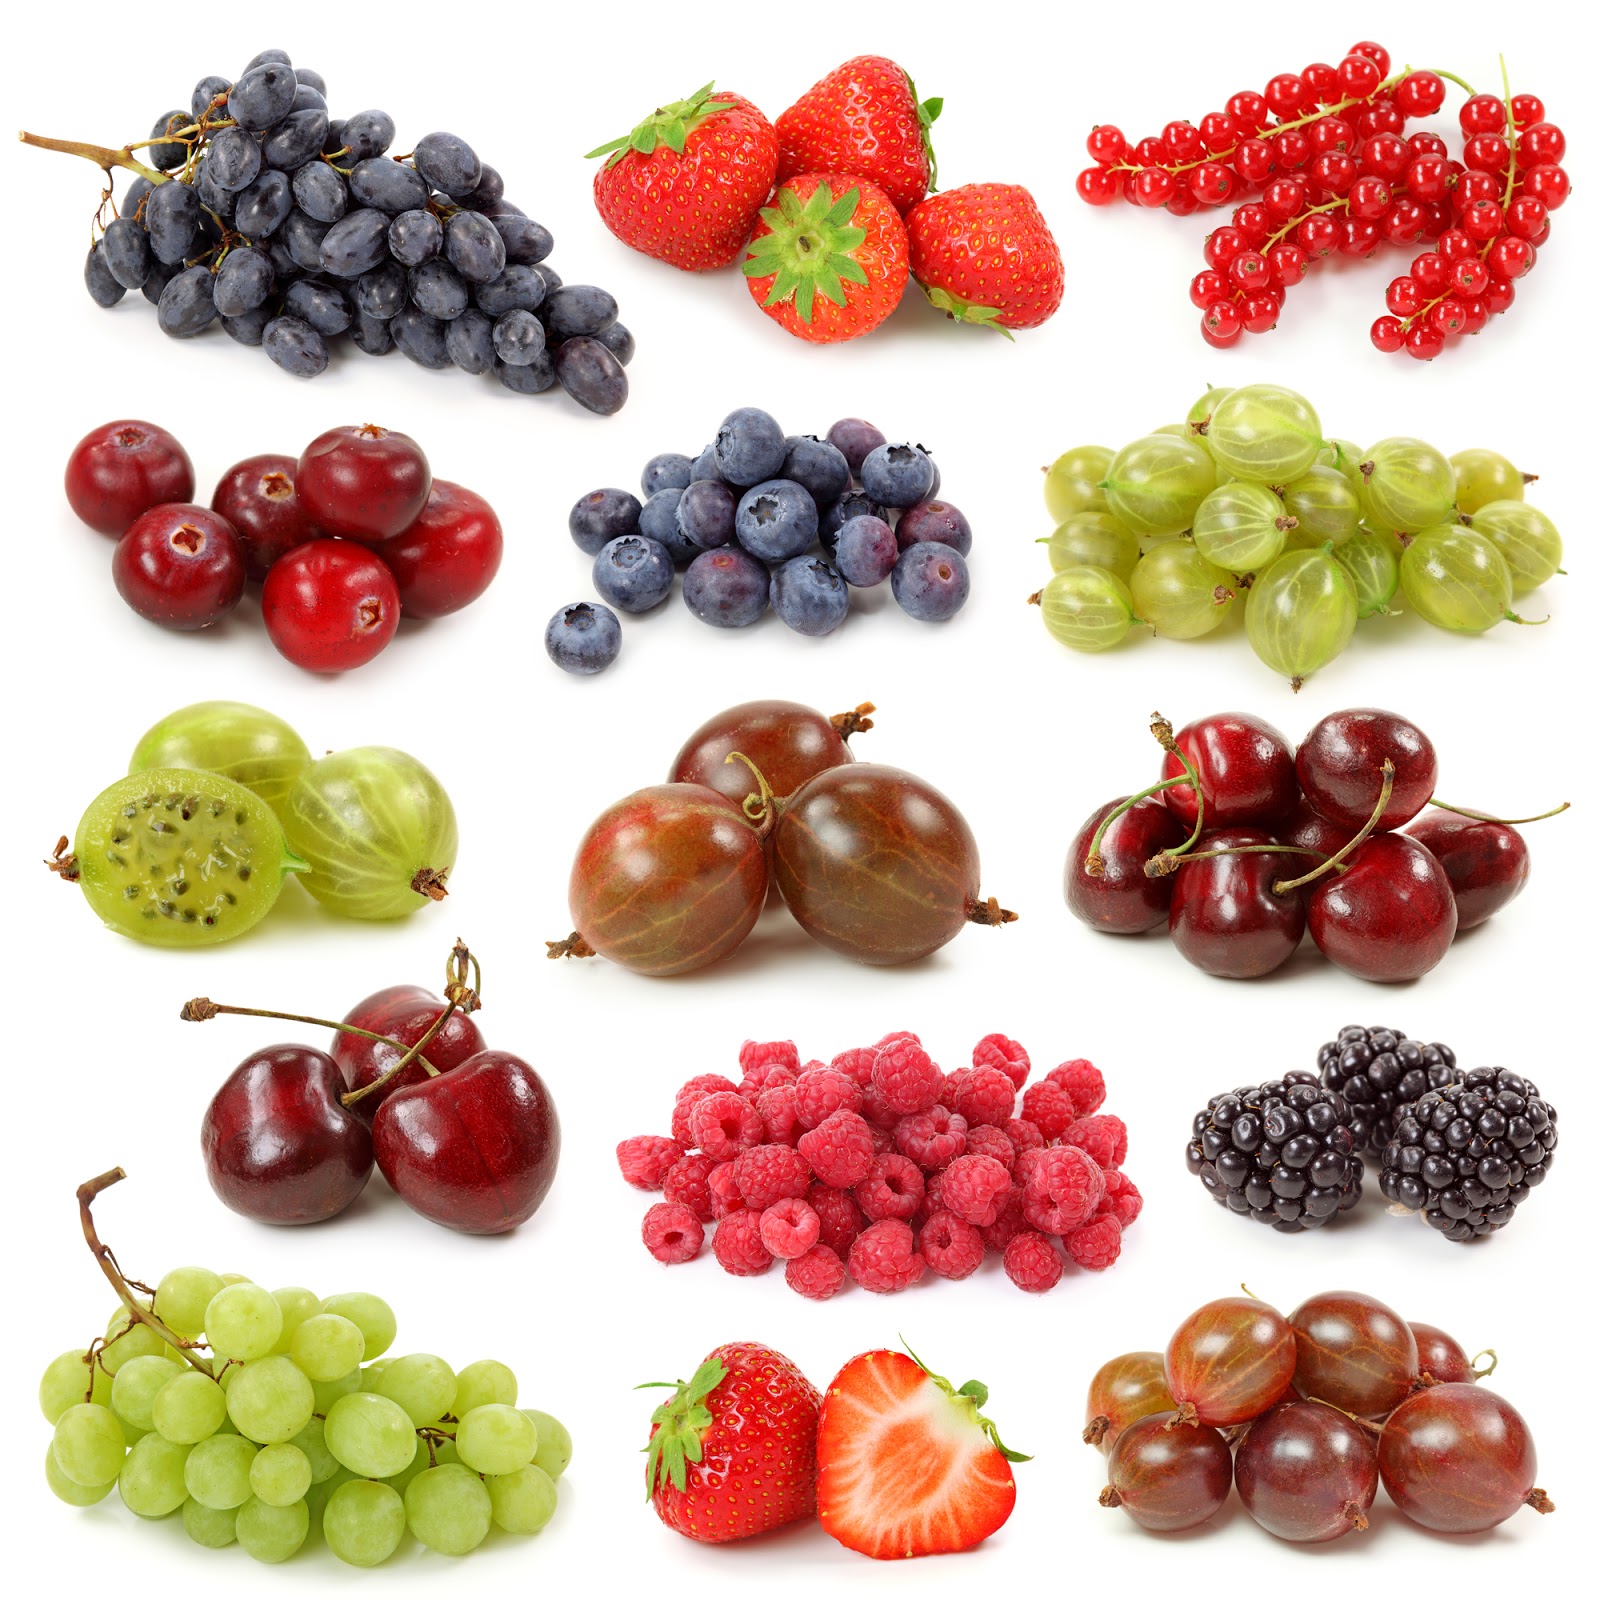 BANCO DE IMÁGENES GRATIS: Deliciosas frutas antioxidantes ¿Las conoces